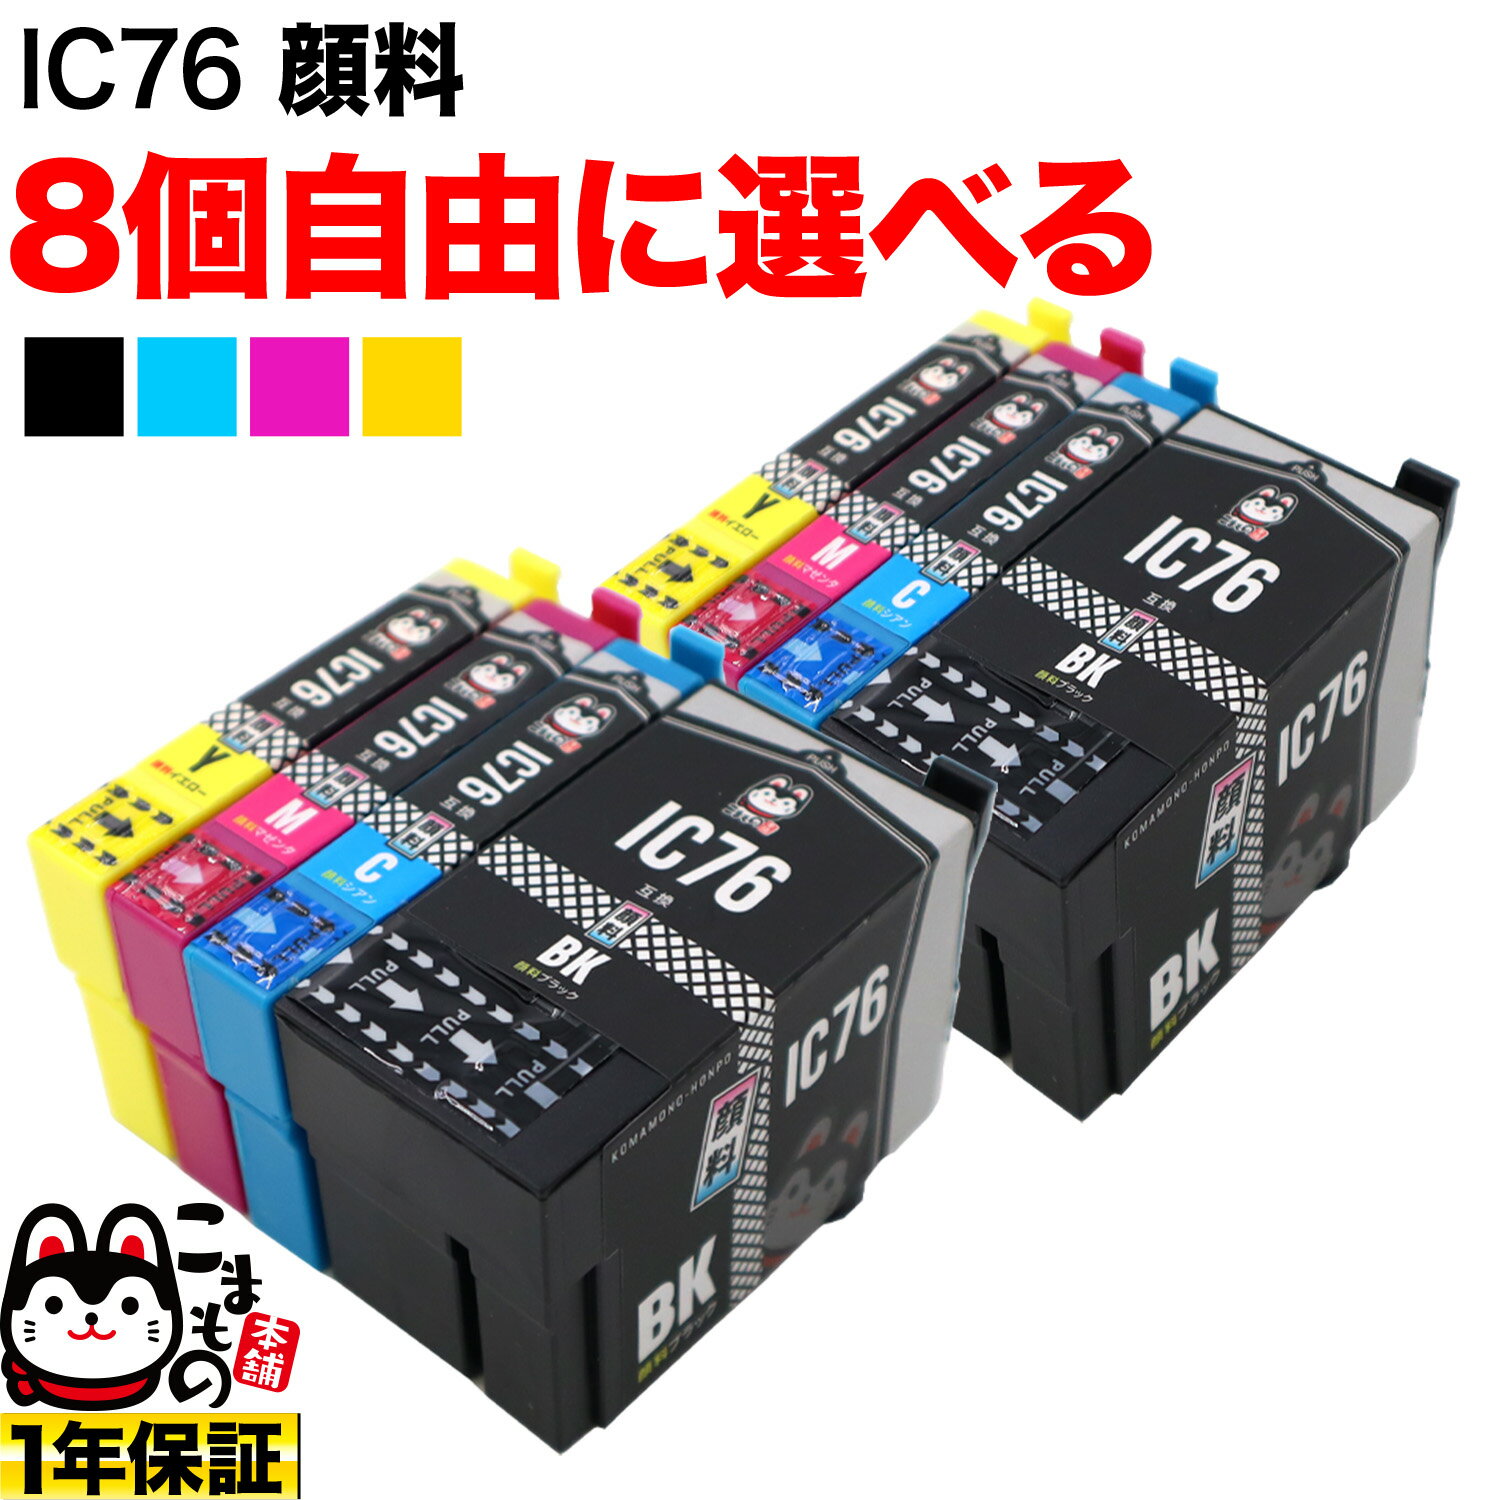 ポイント増量中 +1個おまけ エプソン用 IC76互換インクカートリッジ 大容量 顔料 自由選択8+1個セット フリーチョイス 選べる8+1個セット PX-M5040C6 PX-M5040C7